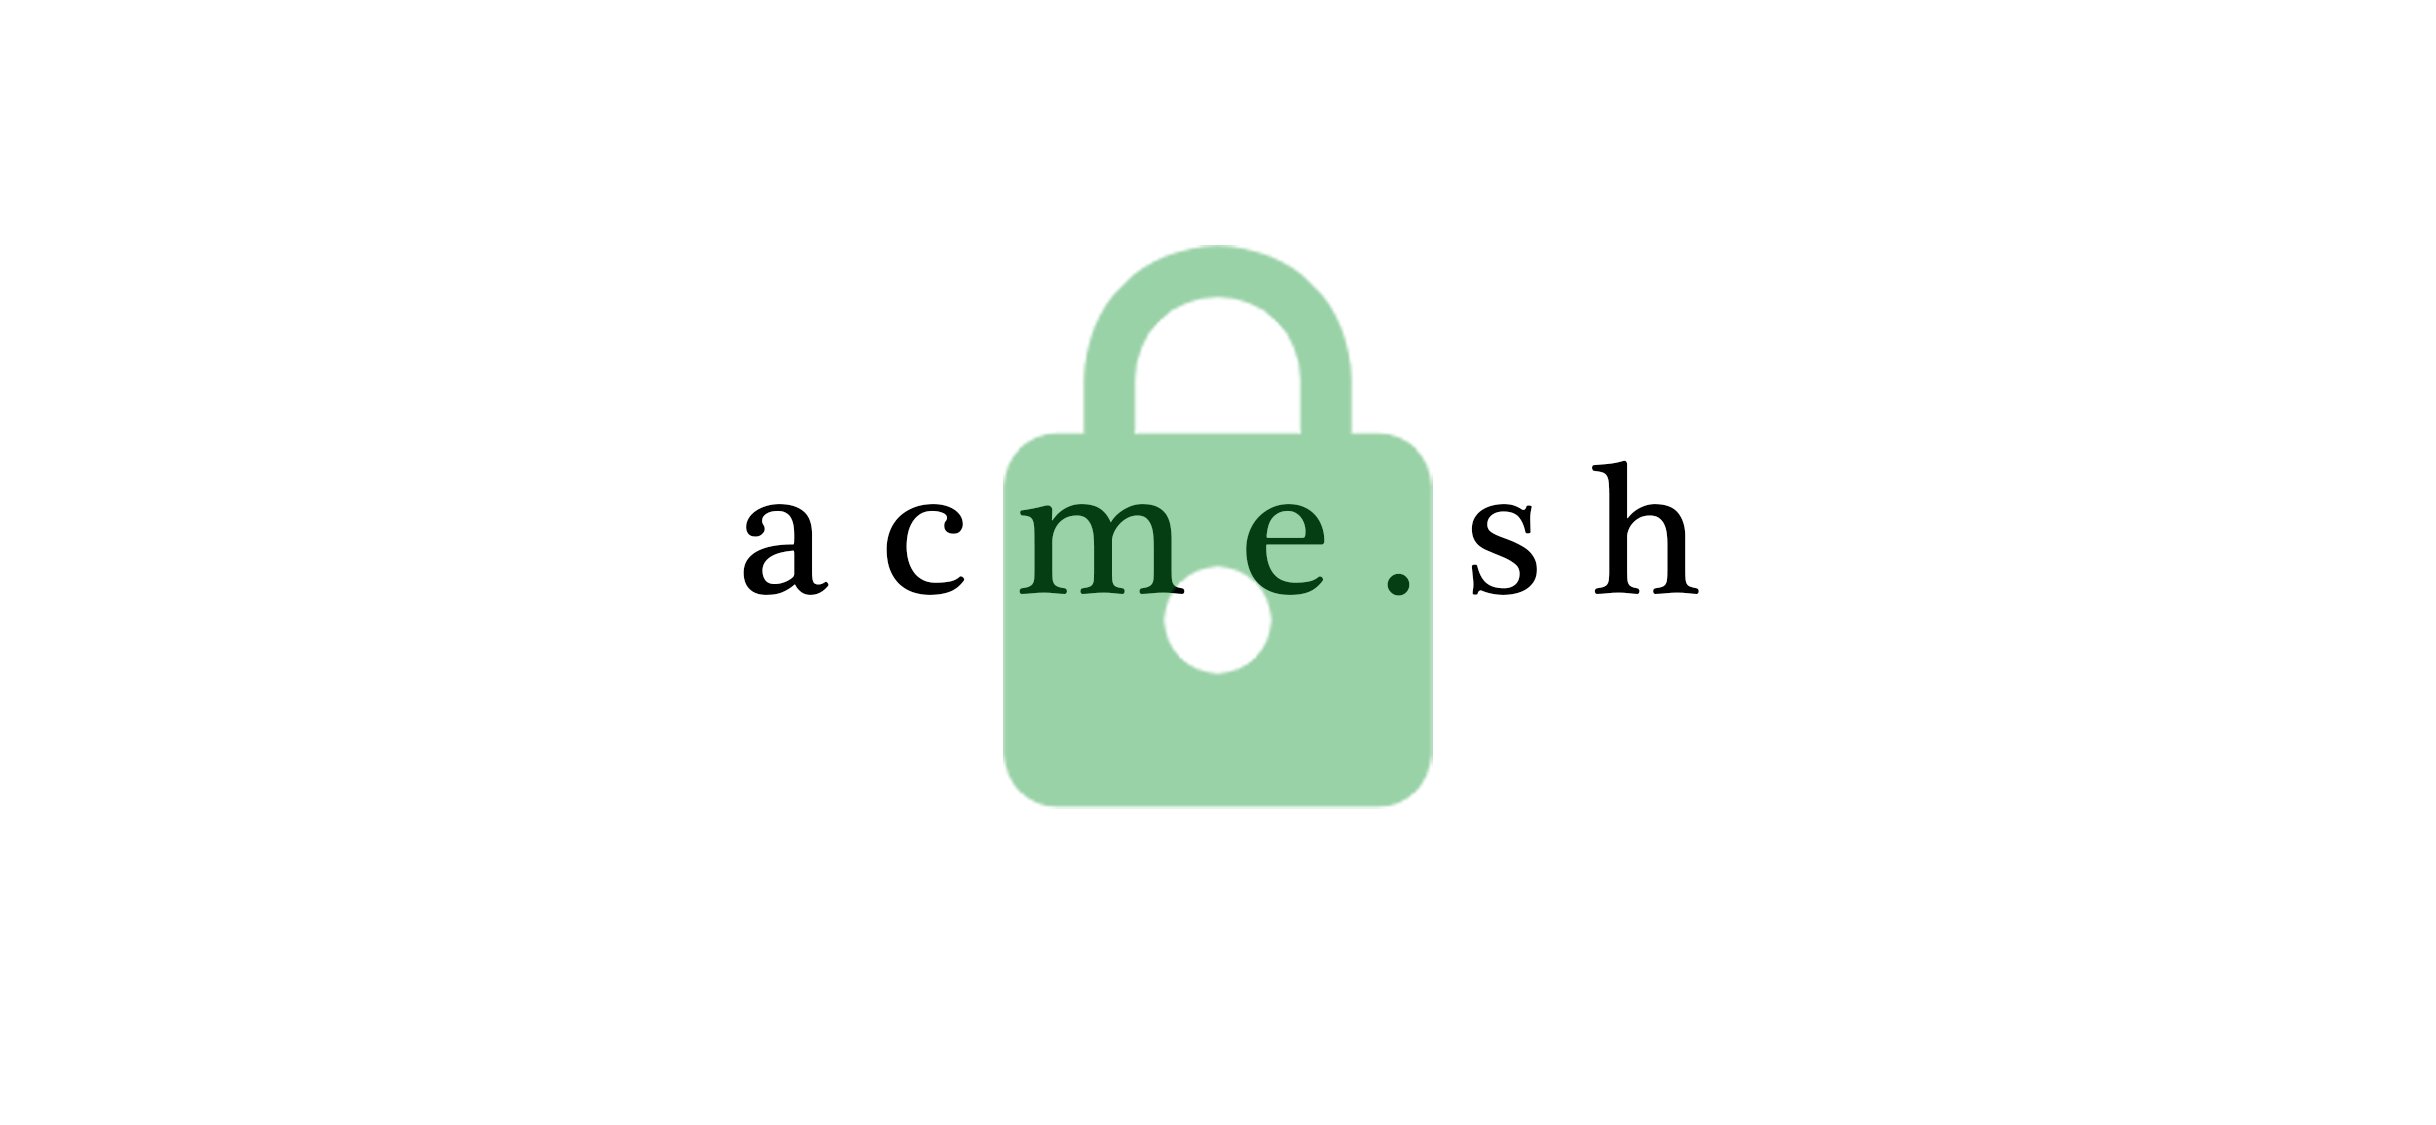 使用acme.sh签发证书